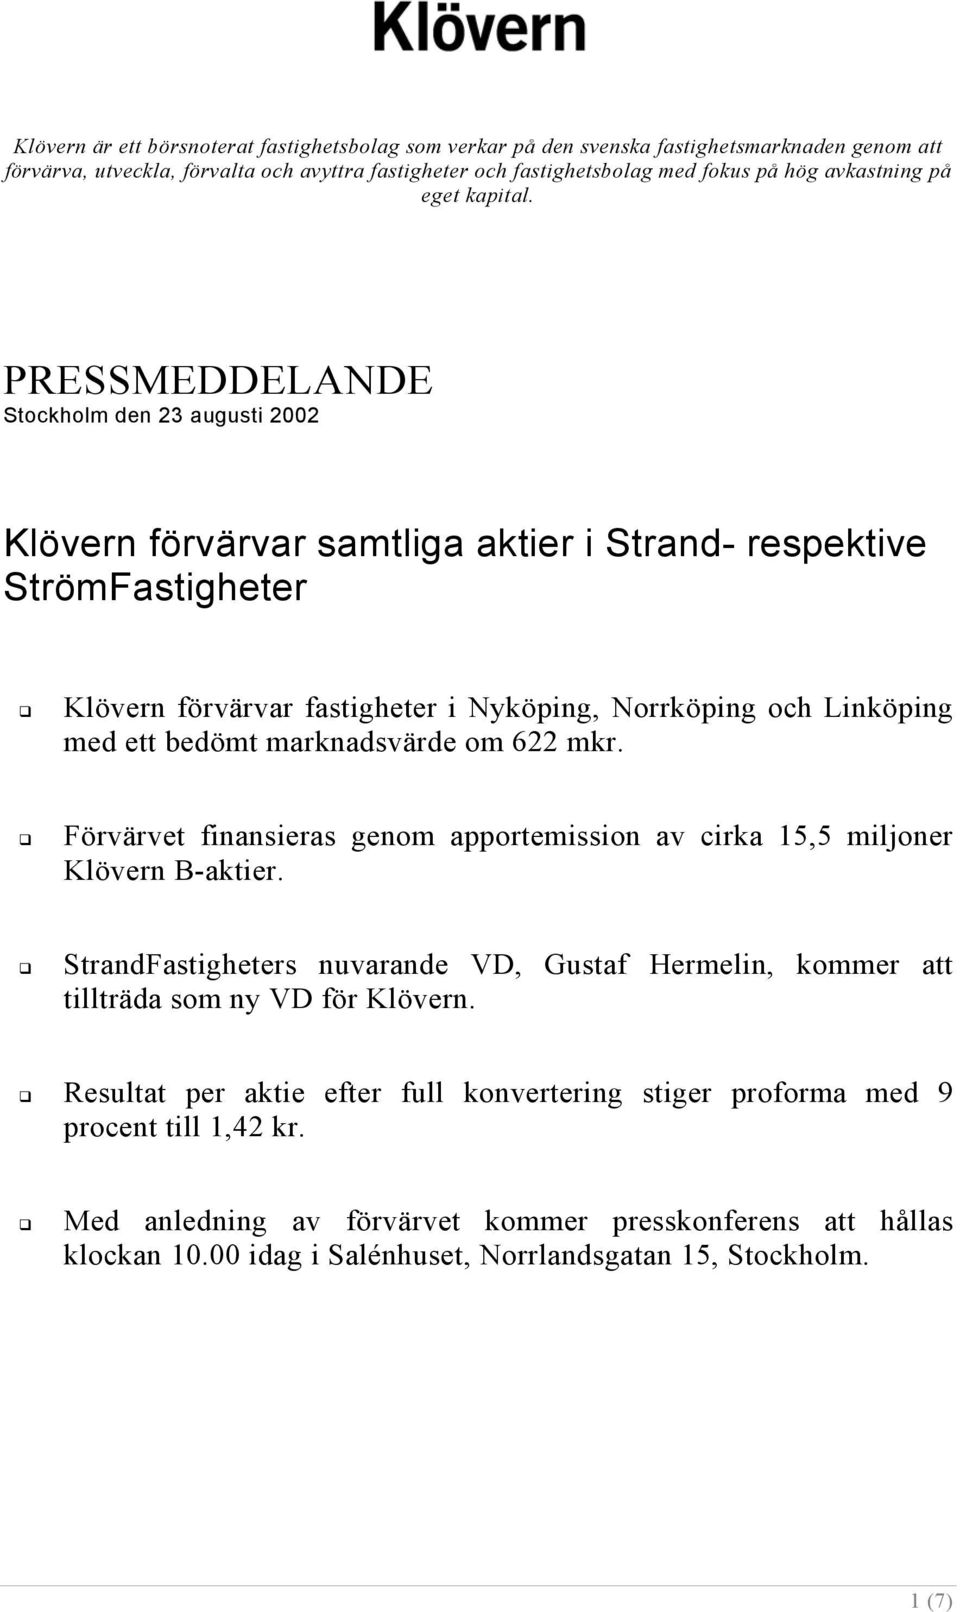 PRESSMEDDELANDE Stockholm den 23 augusti 2002 Klövern förvärvar samtliga aktier i Strand- respektive StrömFastigheter Klövern förvärvar fastigheter i Nyköping, Norrköping och Linköping med ett bedömt